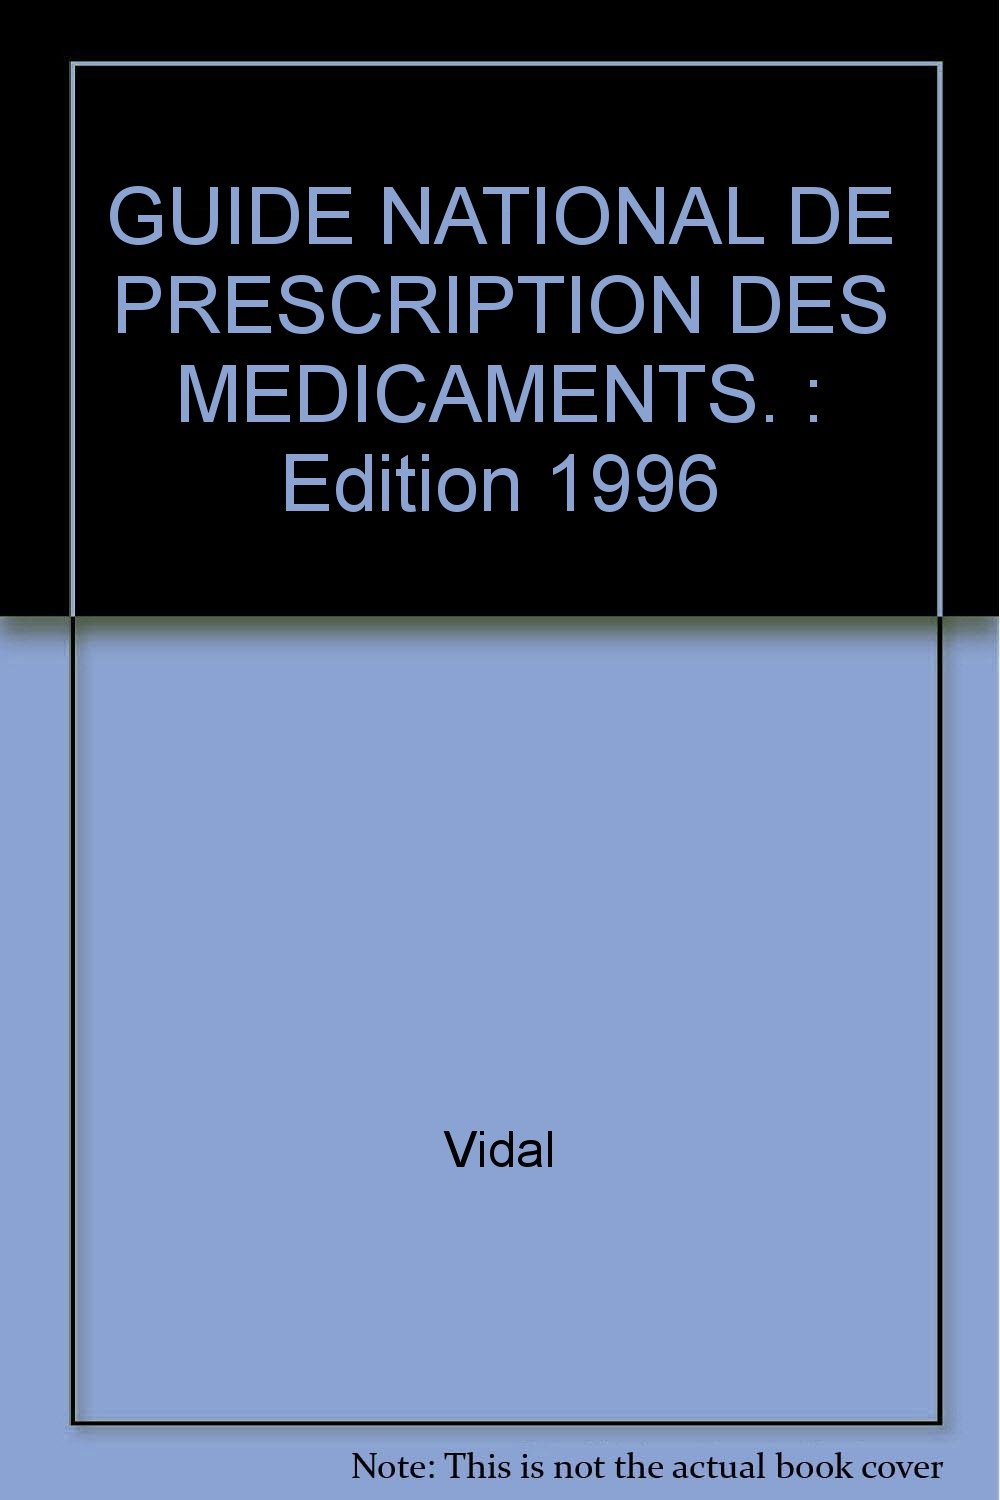 GUIDE NATIONAL DE PRESCRIPTION DES MEDICAMENTS.: Edition 1996